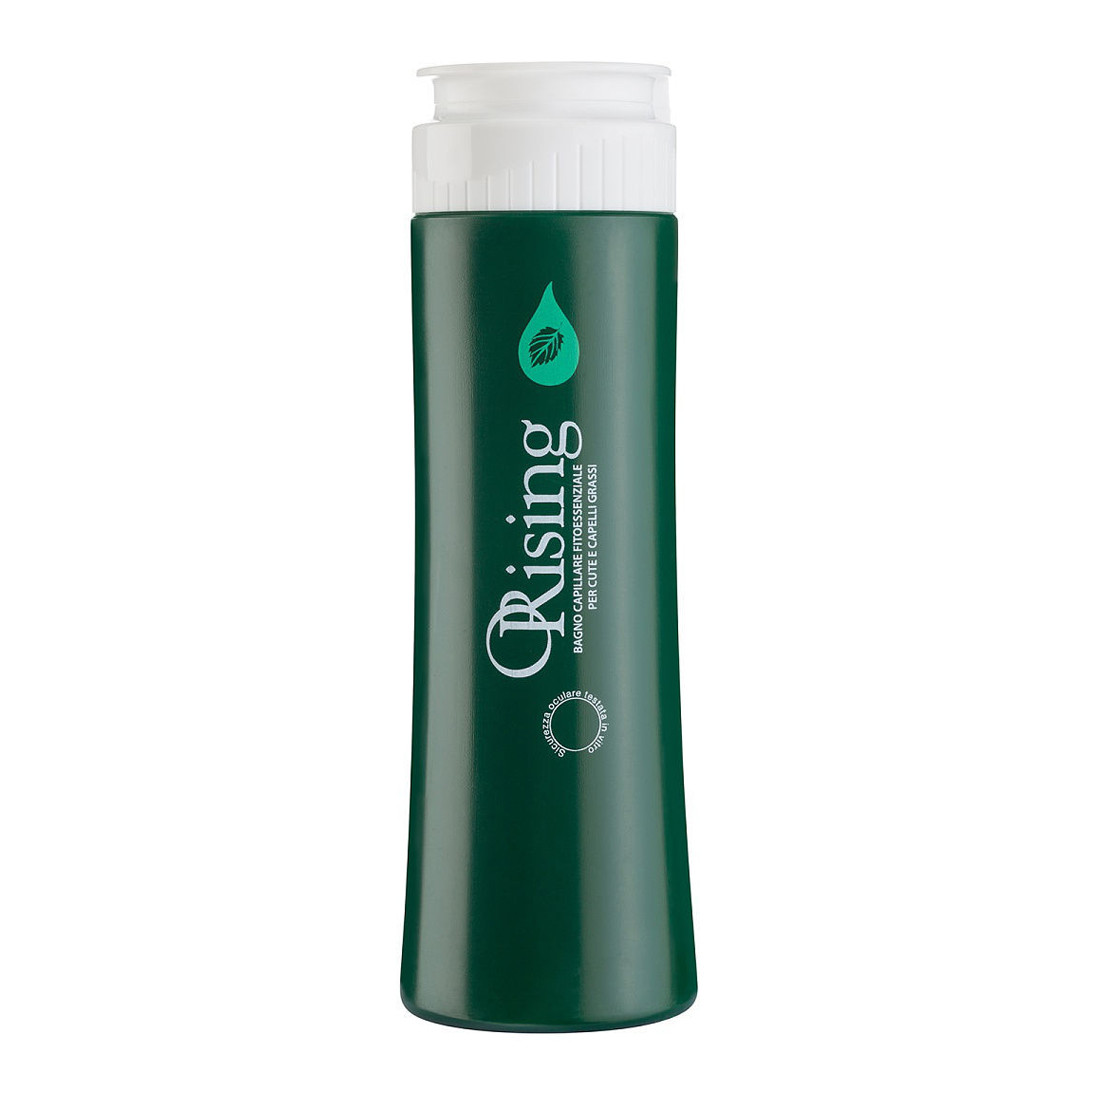 Orising Grassa Shampoo Фитоэссенциальный шампунь для жирных волос